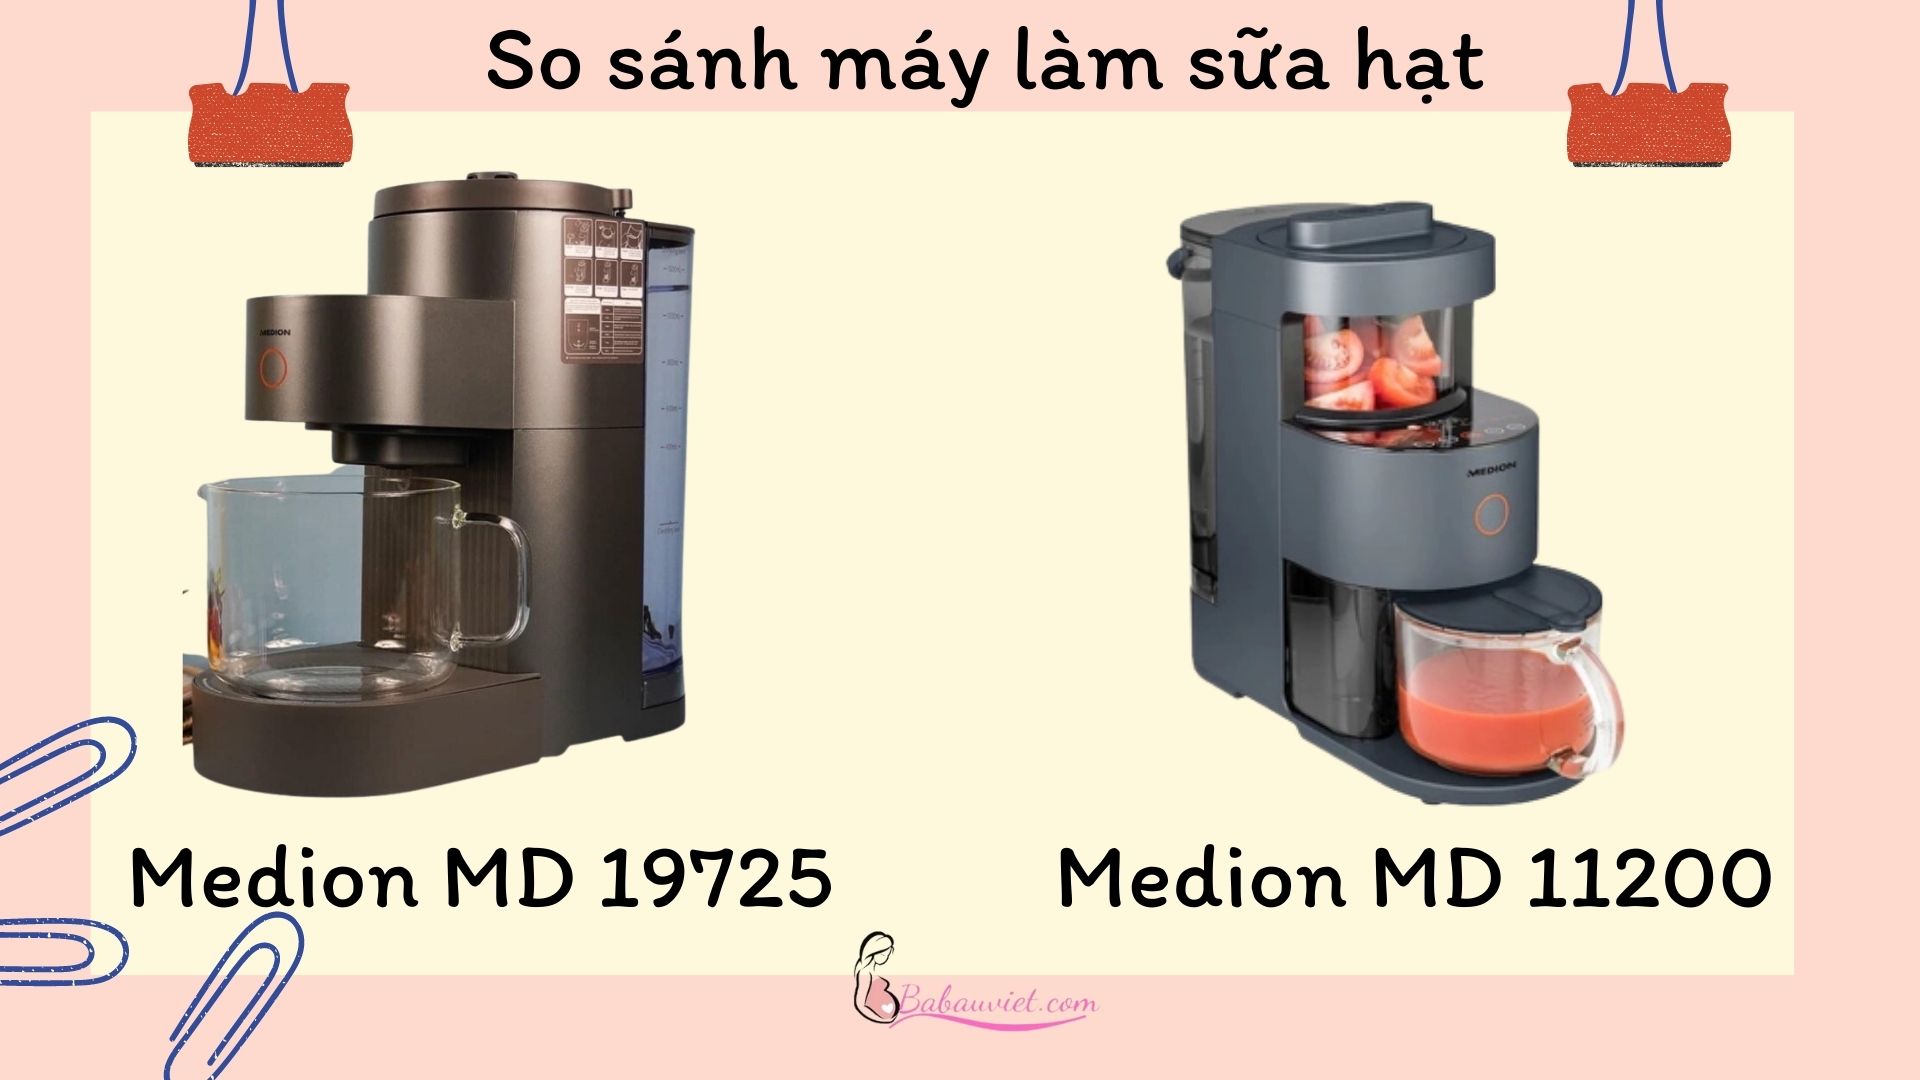 So sánh máy làm sữa hạt Medion 19725 và 11200